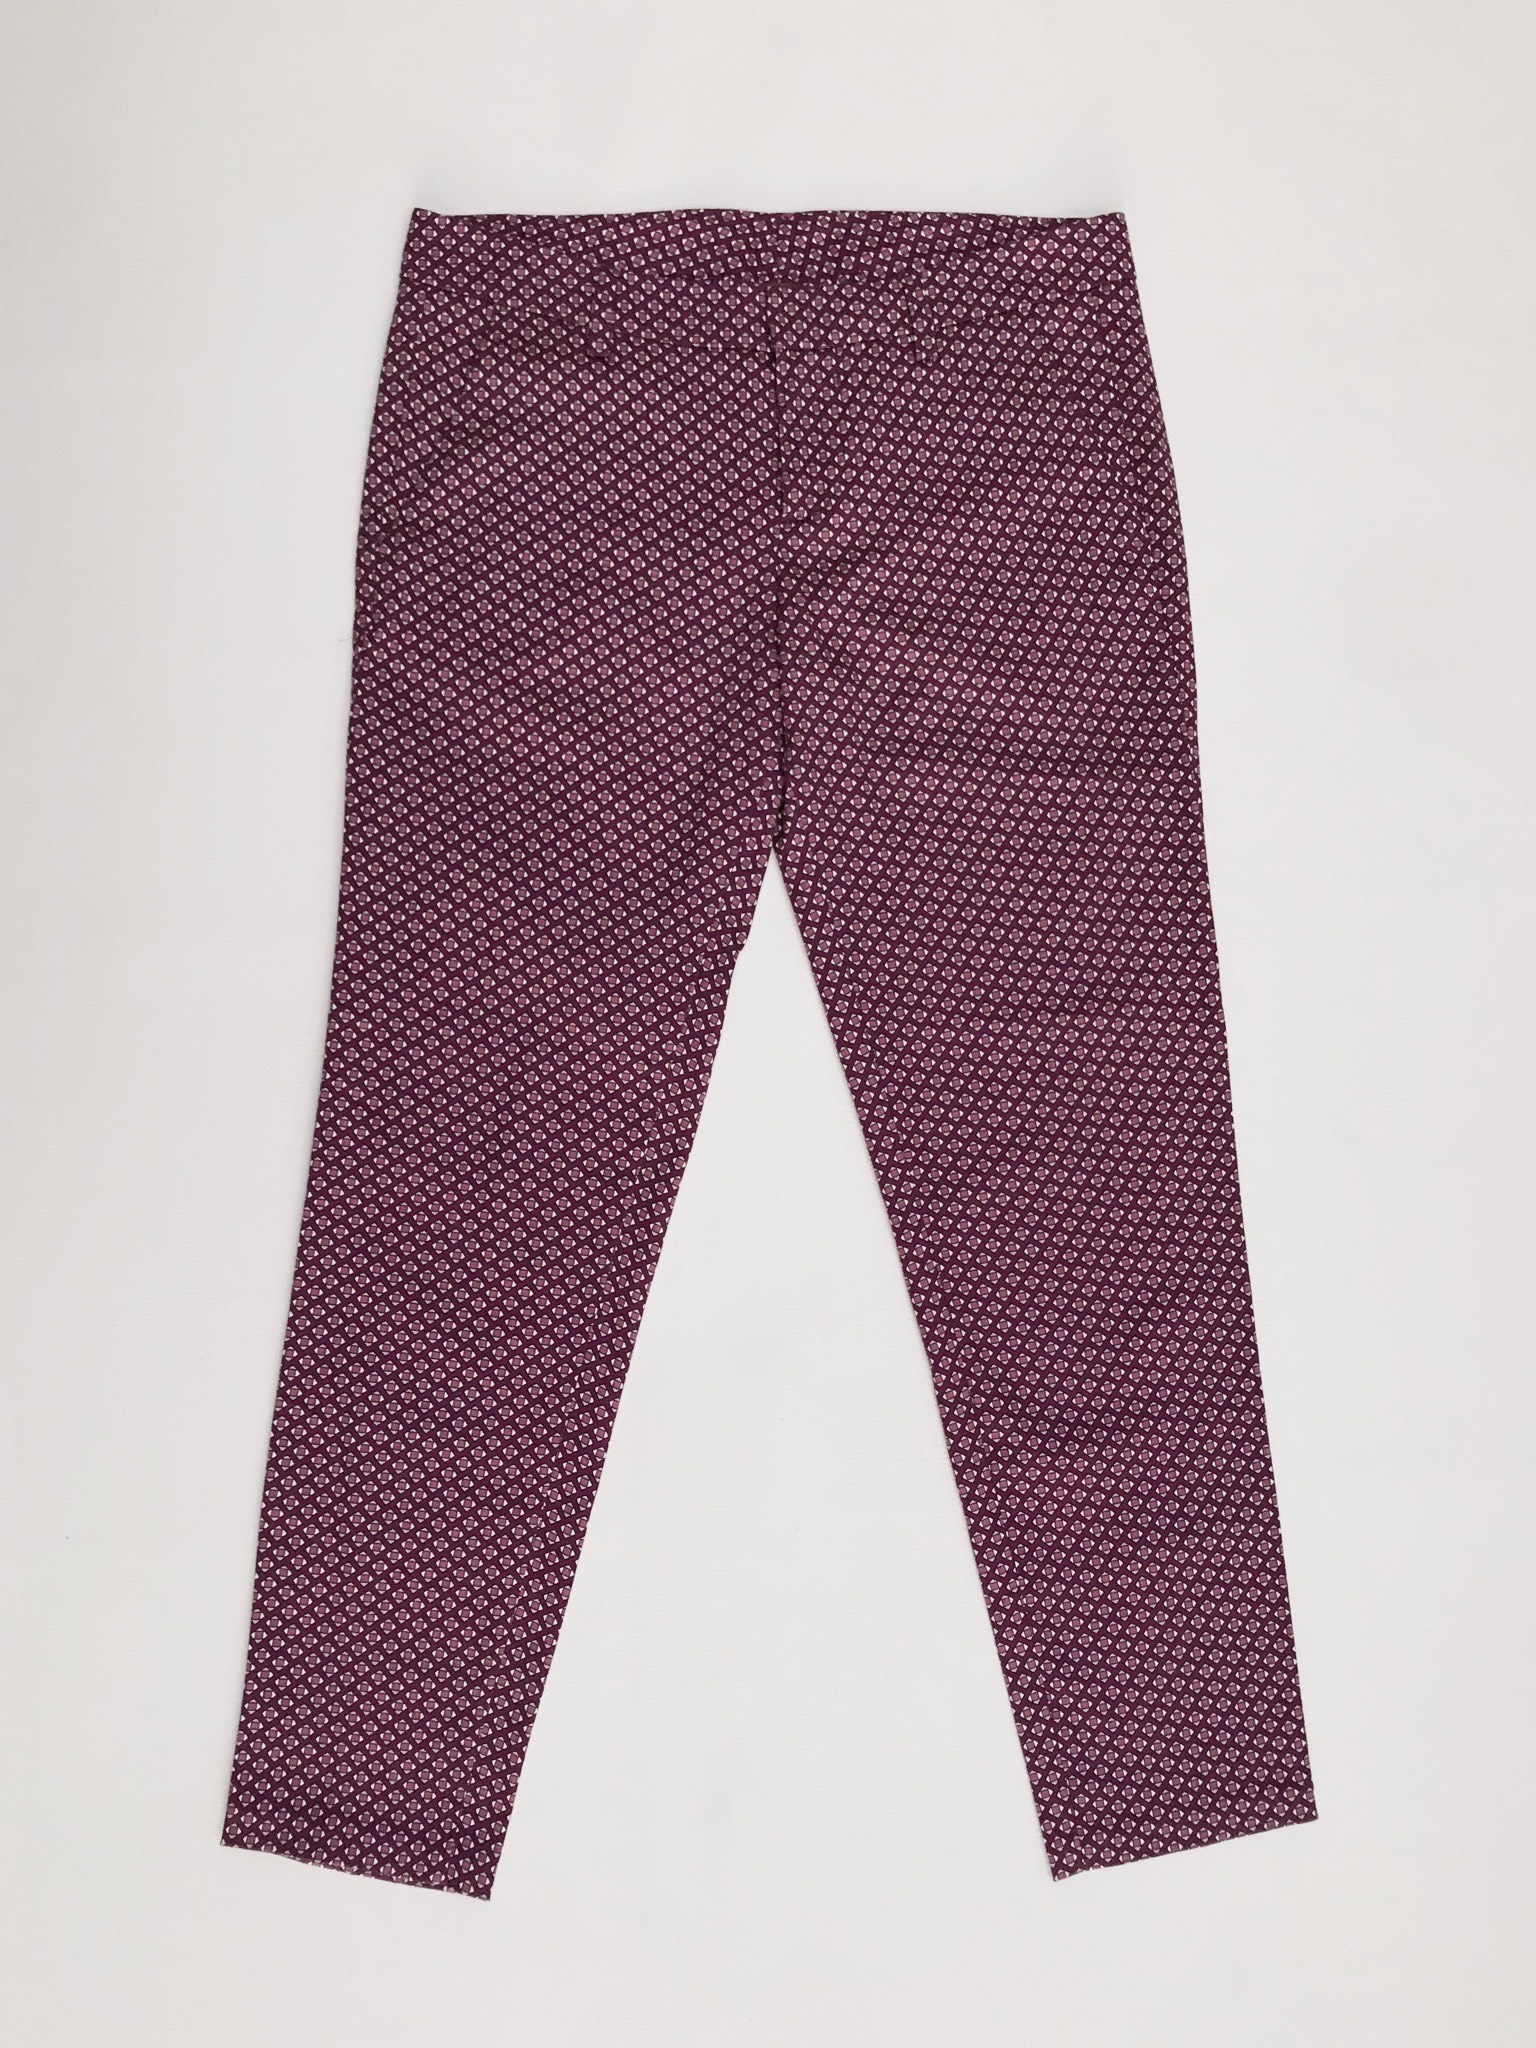 Pantalón Benetton estampado geométrico morado y crema, bolsillos laterales, corte pitillo. ¡Lindo! Precio original S/ 280
Talla 28